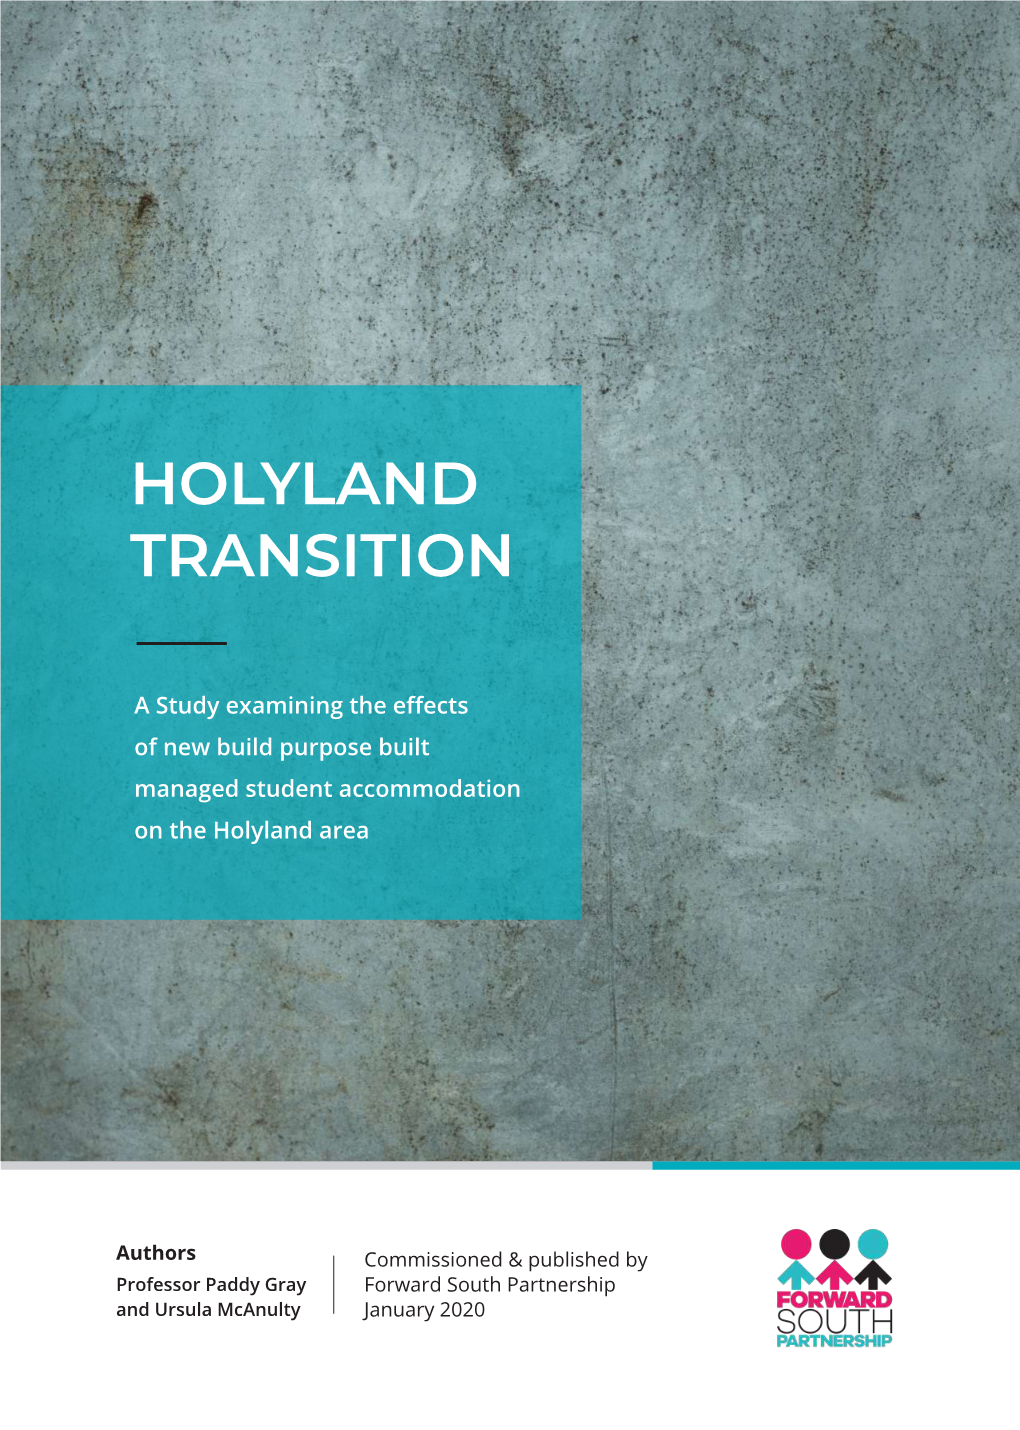 Holyland Transition Study at a Glance